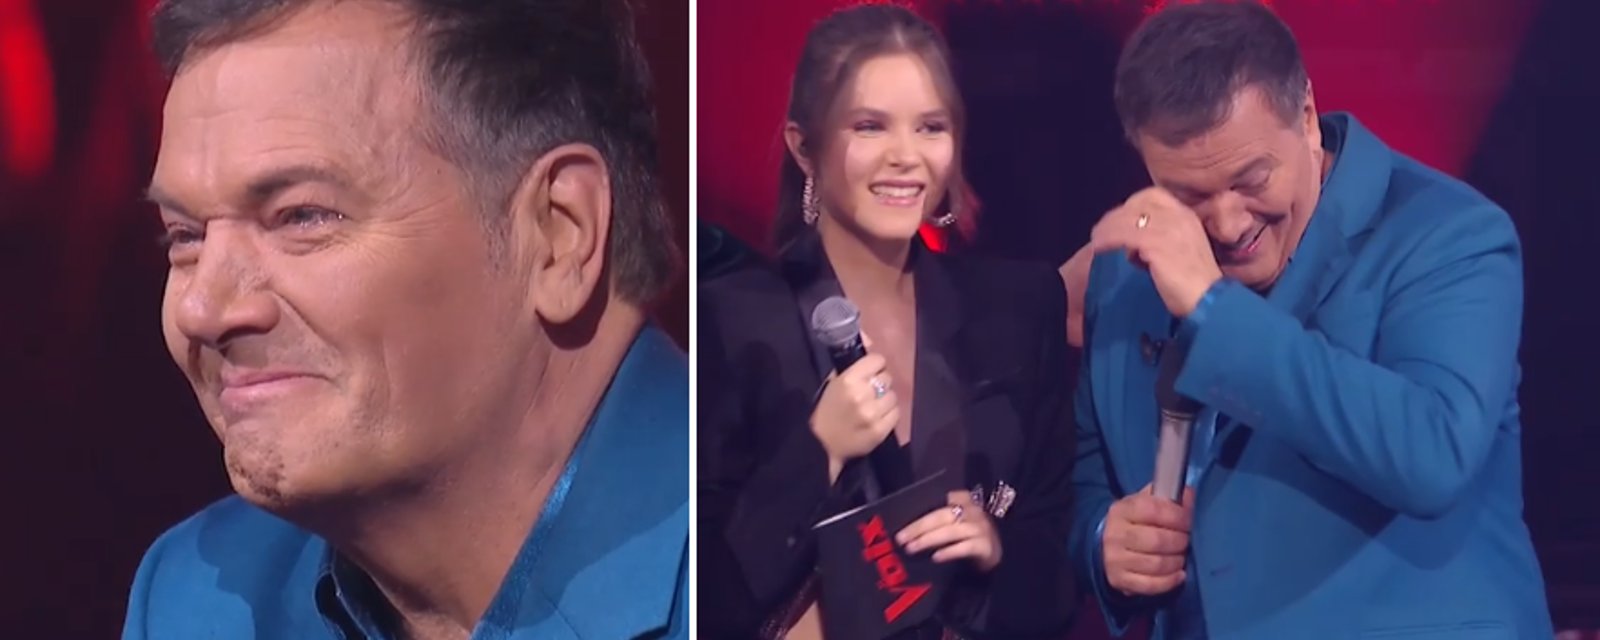 Mario Pelchat fond en larmes après avoir appris que Sophie remporte La Voix 